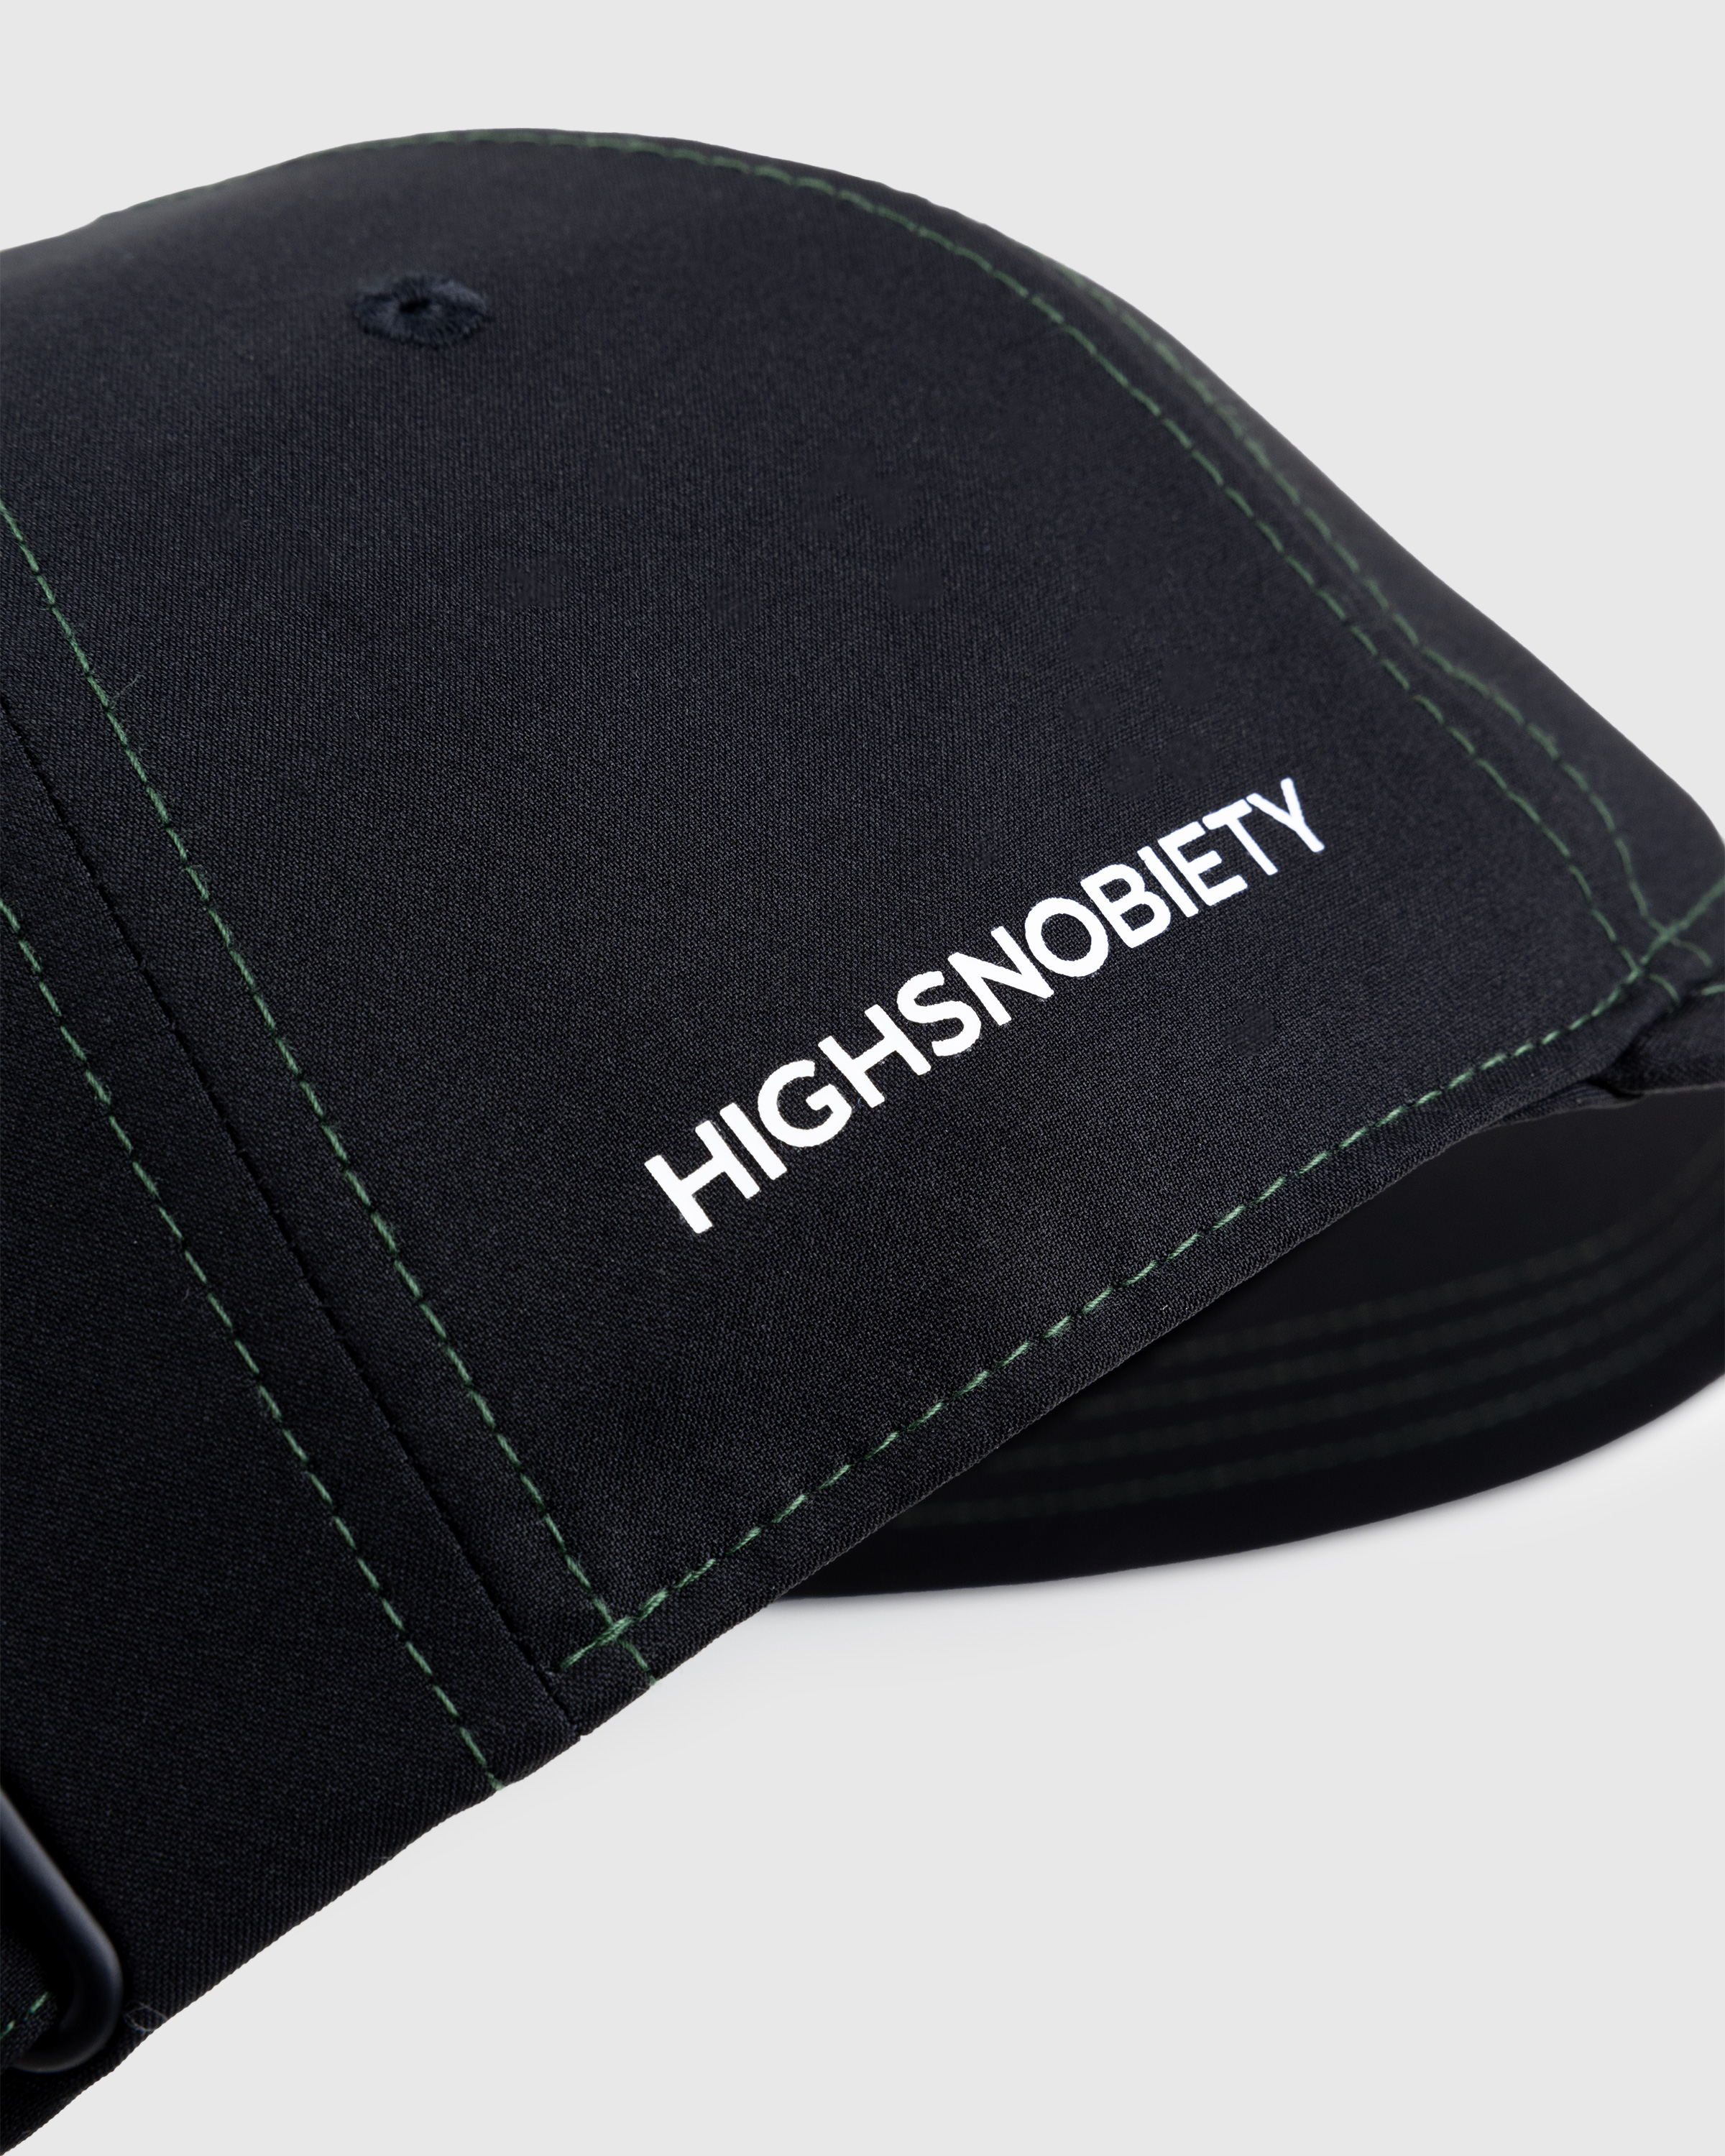 Lacoste x Highsnobiety – Not In Paris Cap Black - Caps - Black - Image 6